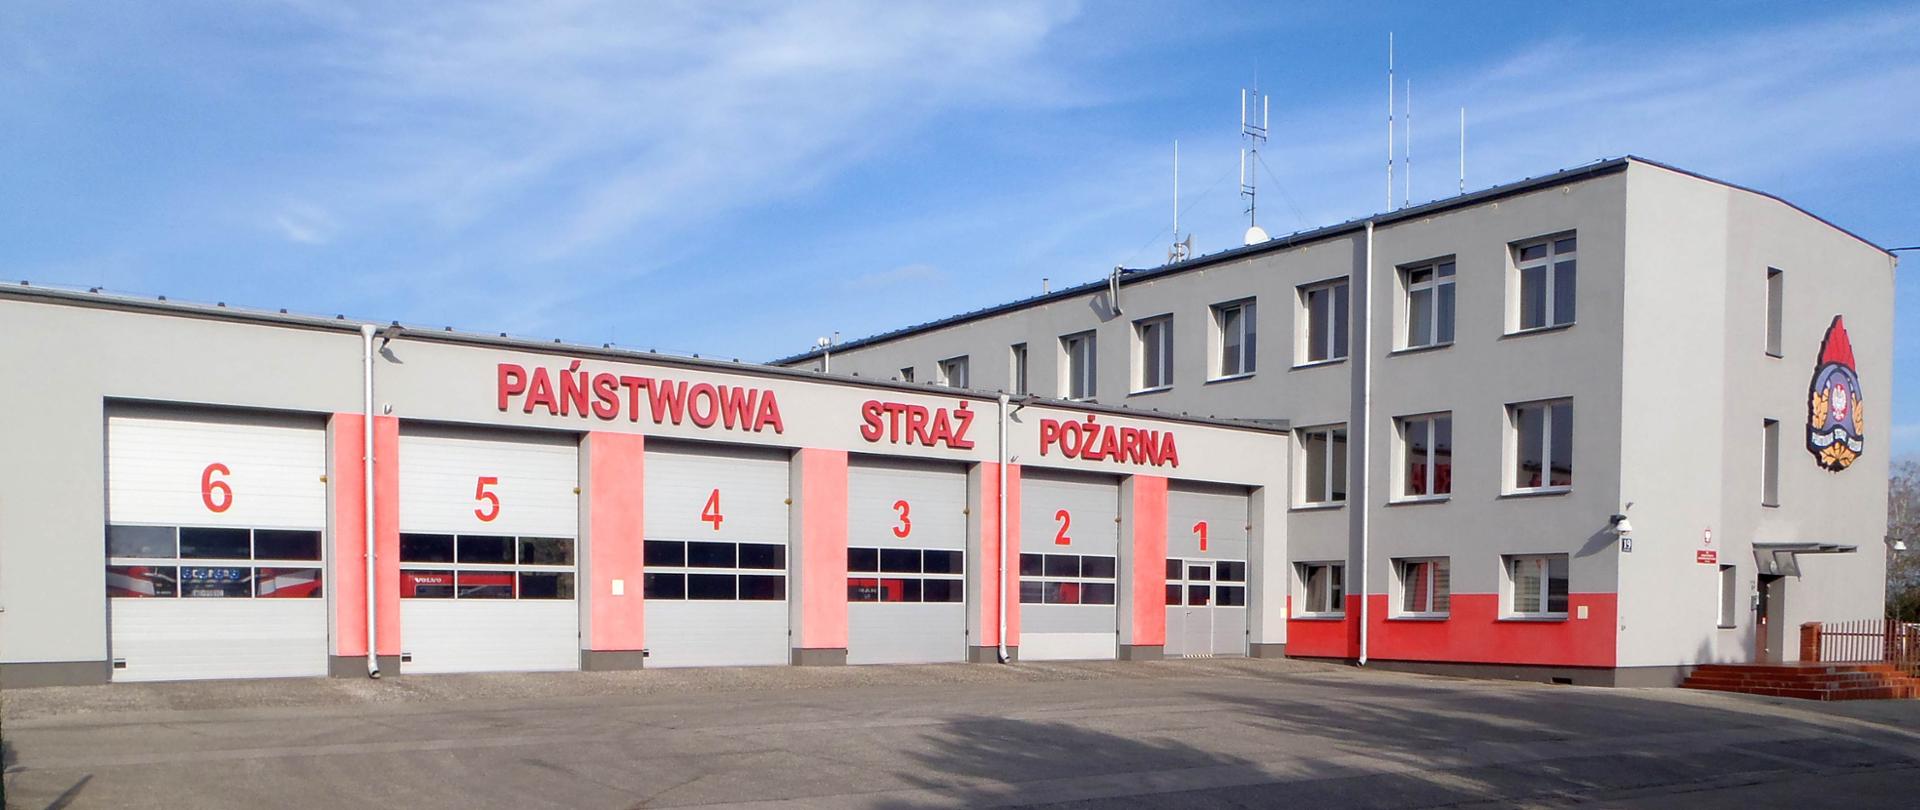 Budynek komendy PSP w Piasecznie. Widoczne bram wyjazdowych i budynek biurowy 3 kondygnacyjny. Nad garażami napis Państwowa Straż Pożarna, nad wejściem do budynku biurowego logo PSP. 